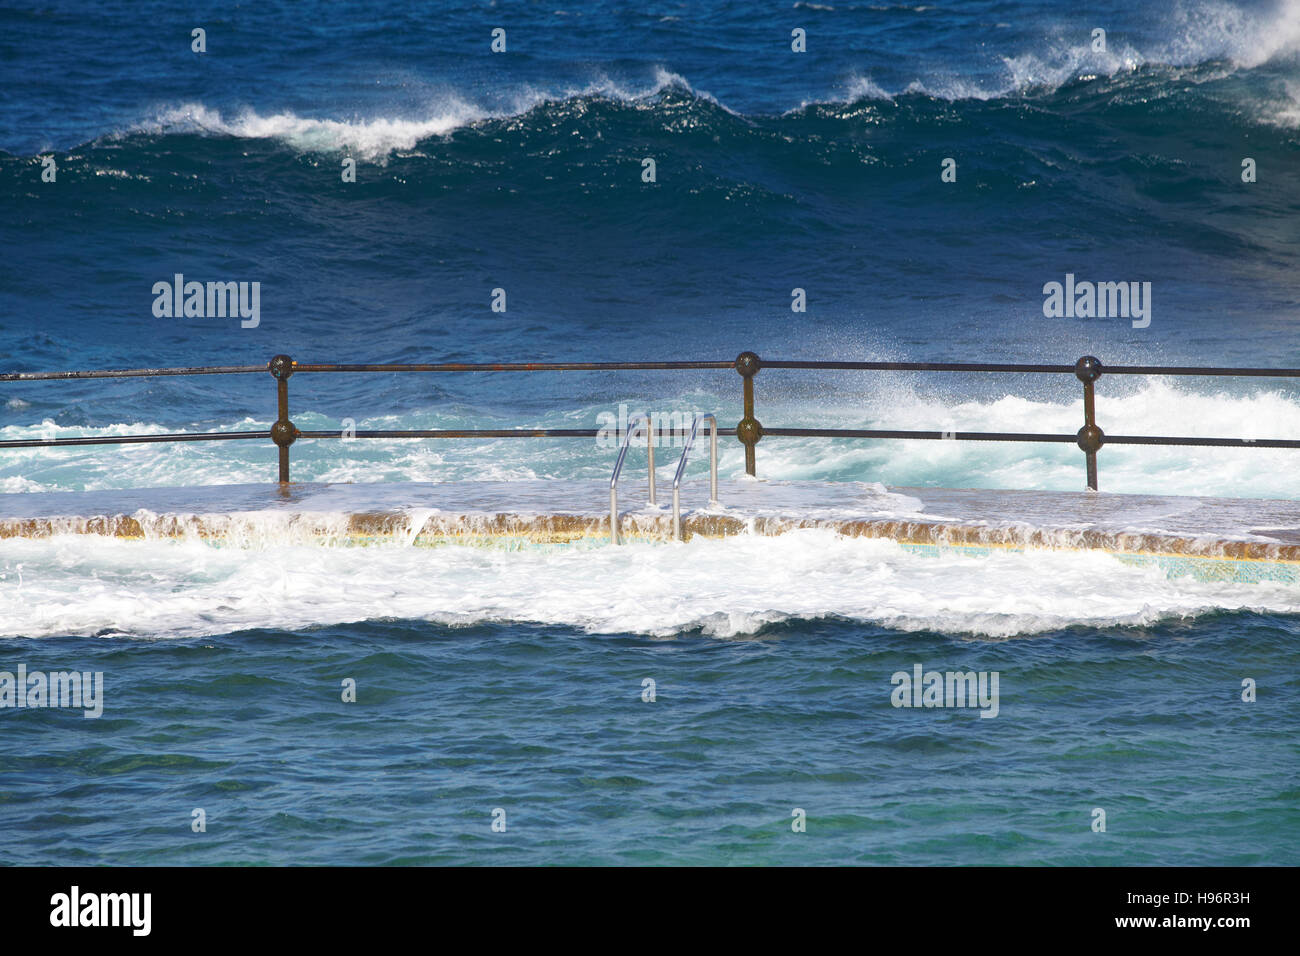 Seawater sloshing into a seawater pool at the Atlantic Ocean in Bajamar, Tenerife, Spain Stock Photo